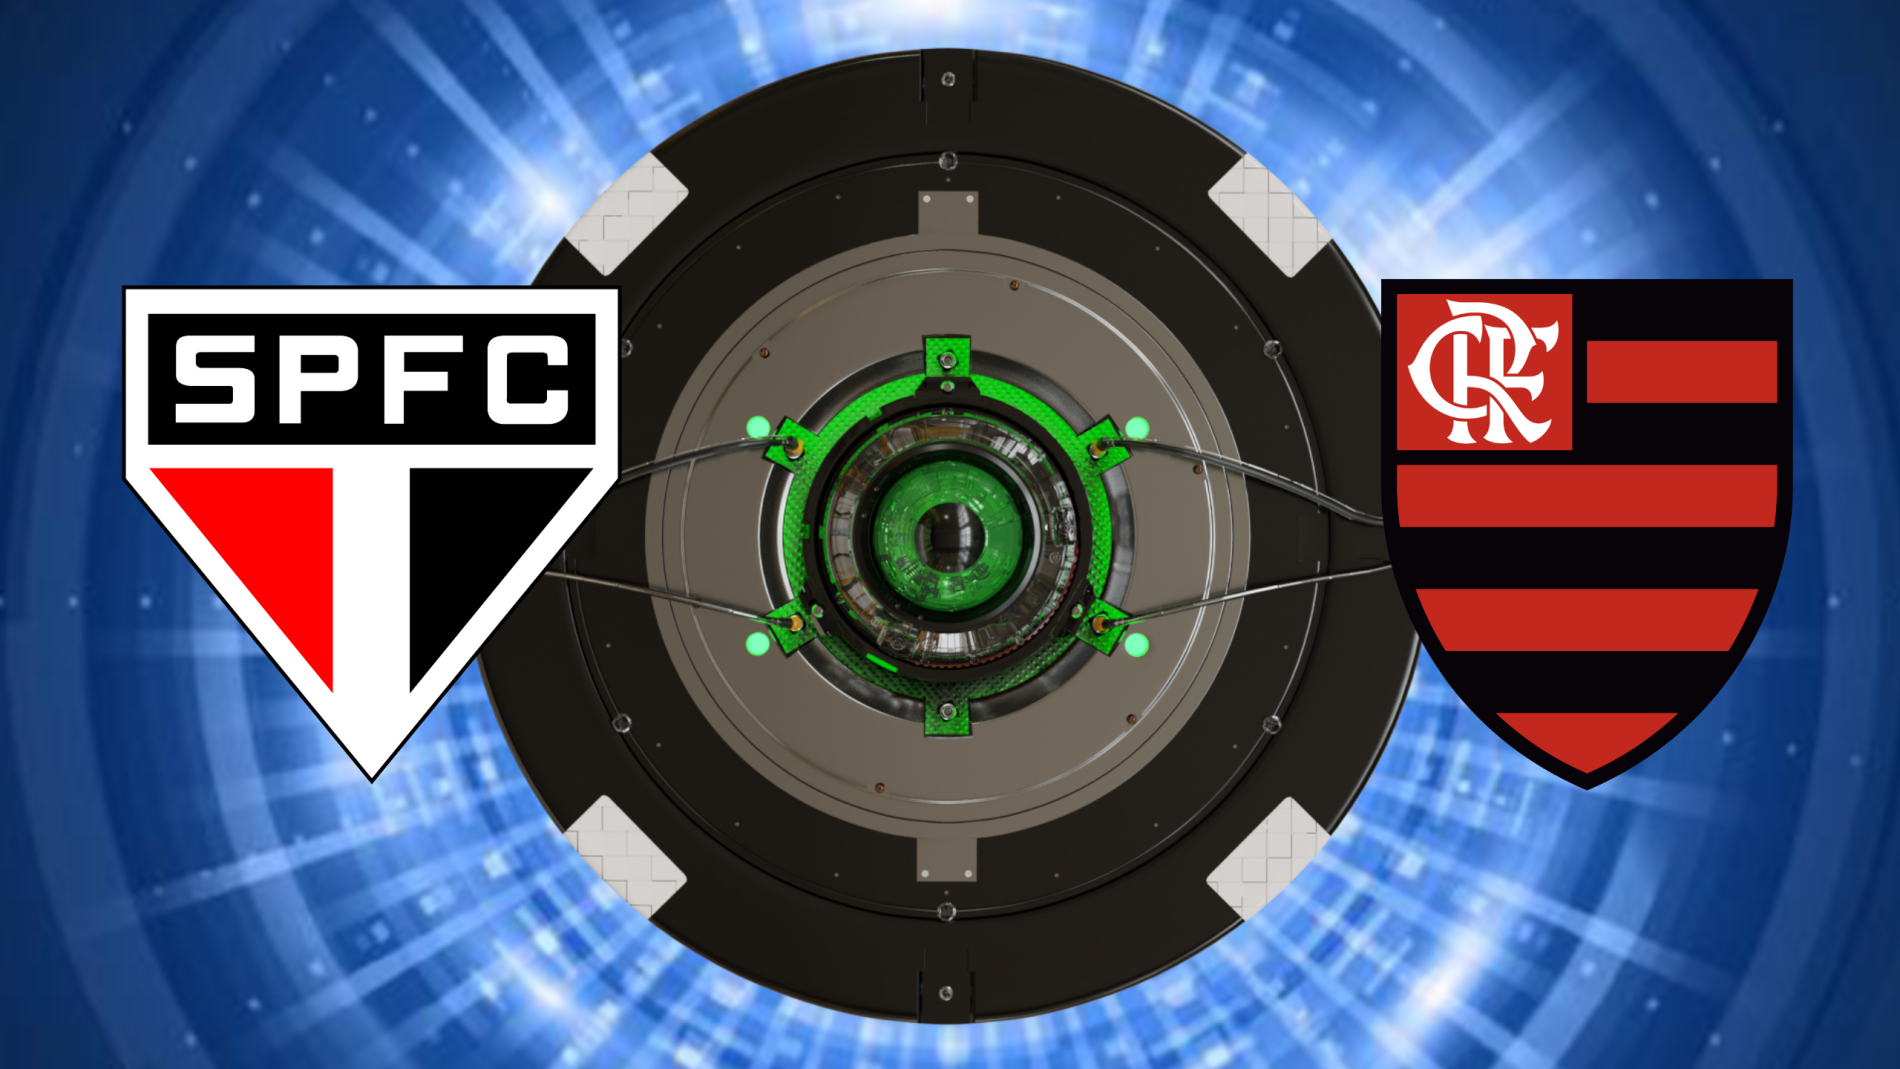 Flamengo x São Paulo ao vivo: onde assistir à final da Copa do Brasil hoje